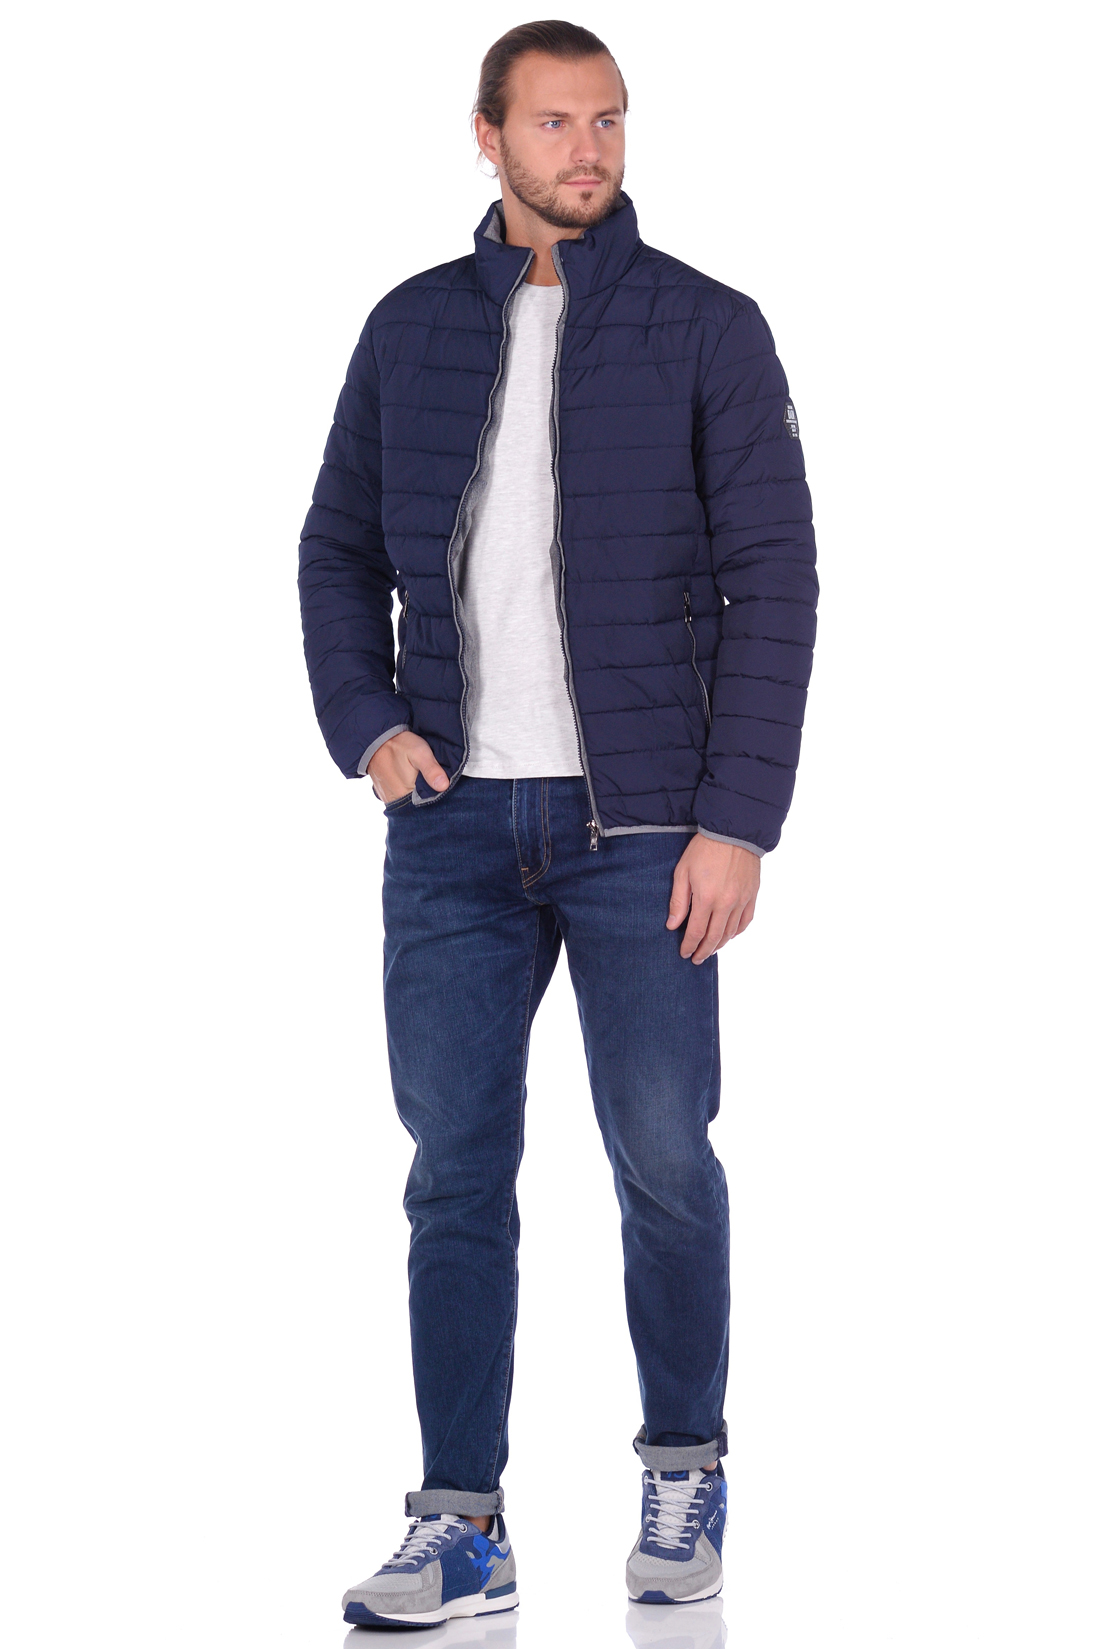 Лёгкая куртка с контрастной отделкой (арт. baon B539553), размер XXL, цвет синий Лёгкая куртка с контрастной отделкой (арт. baon B539553) - фото 4